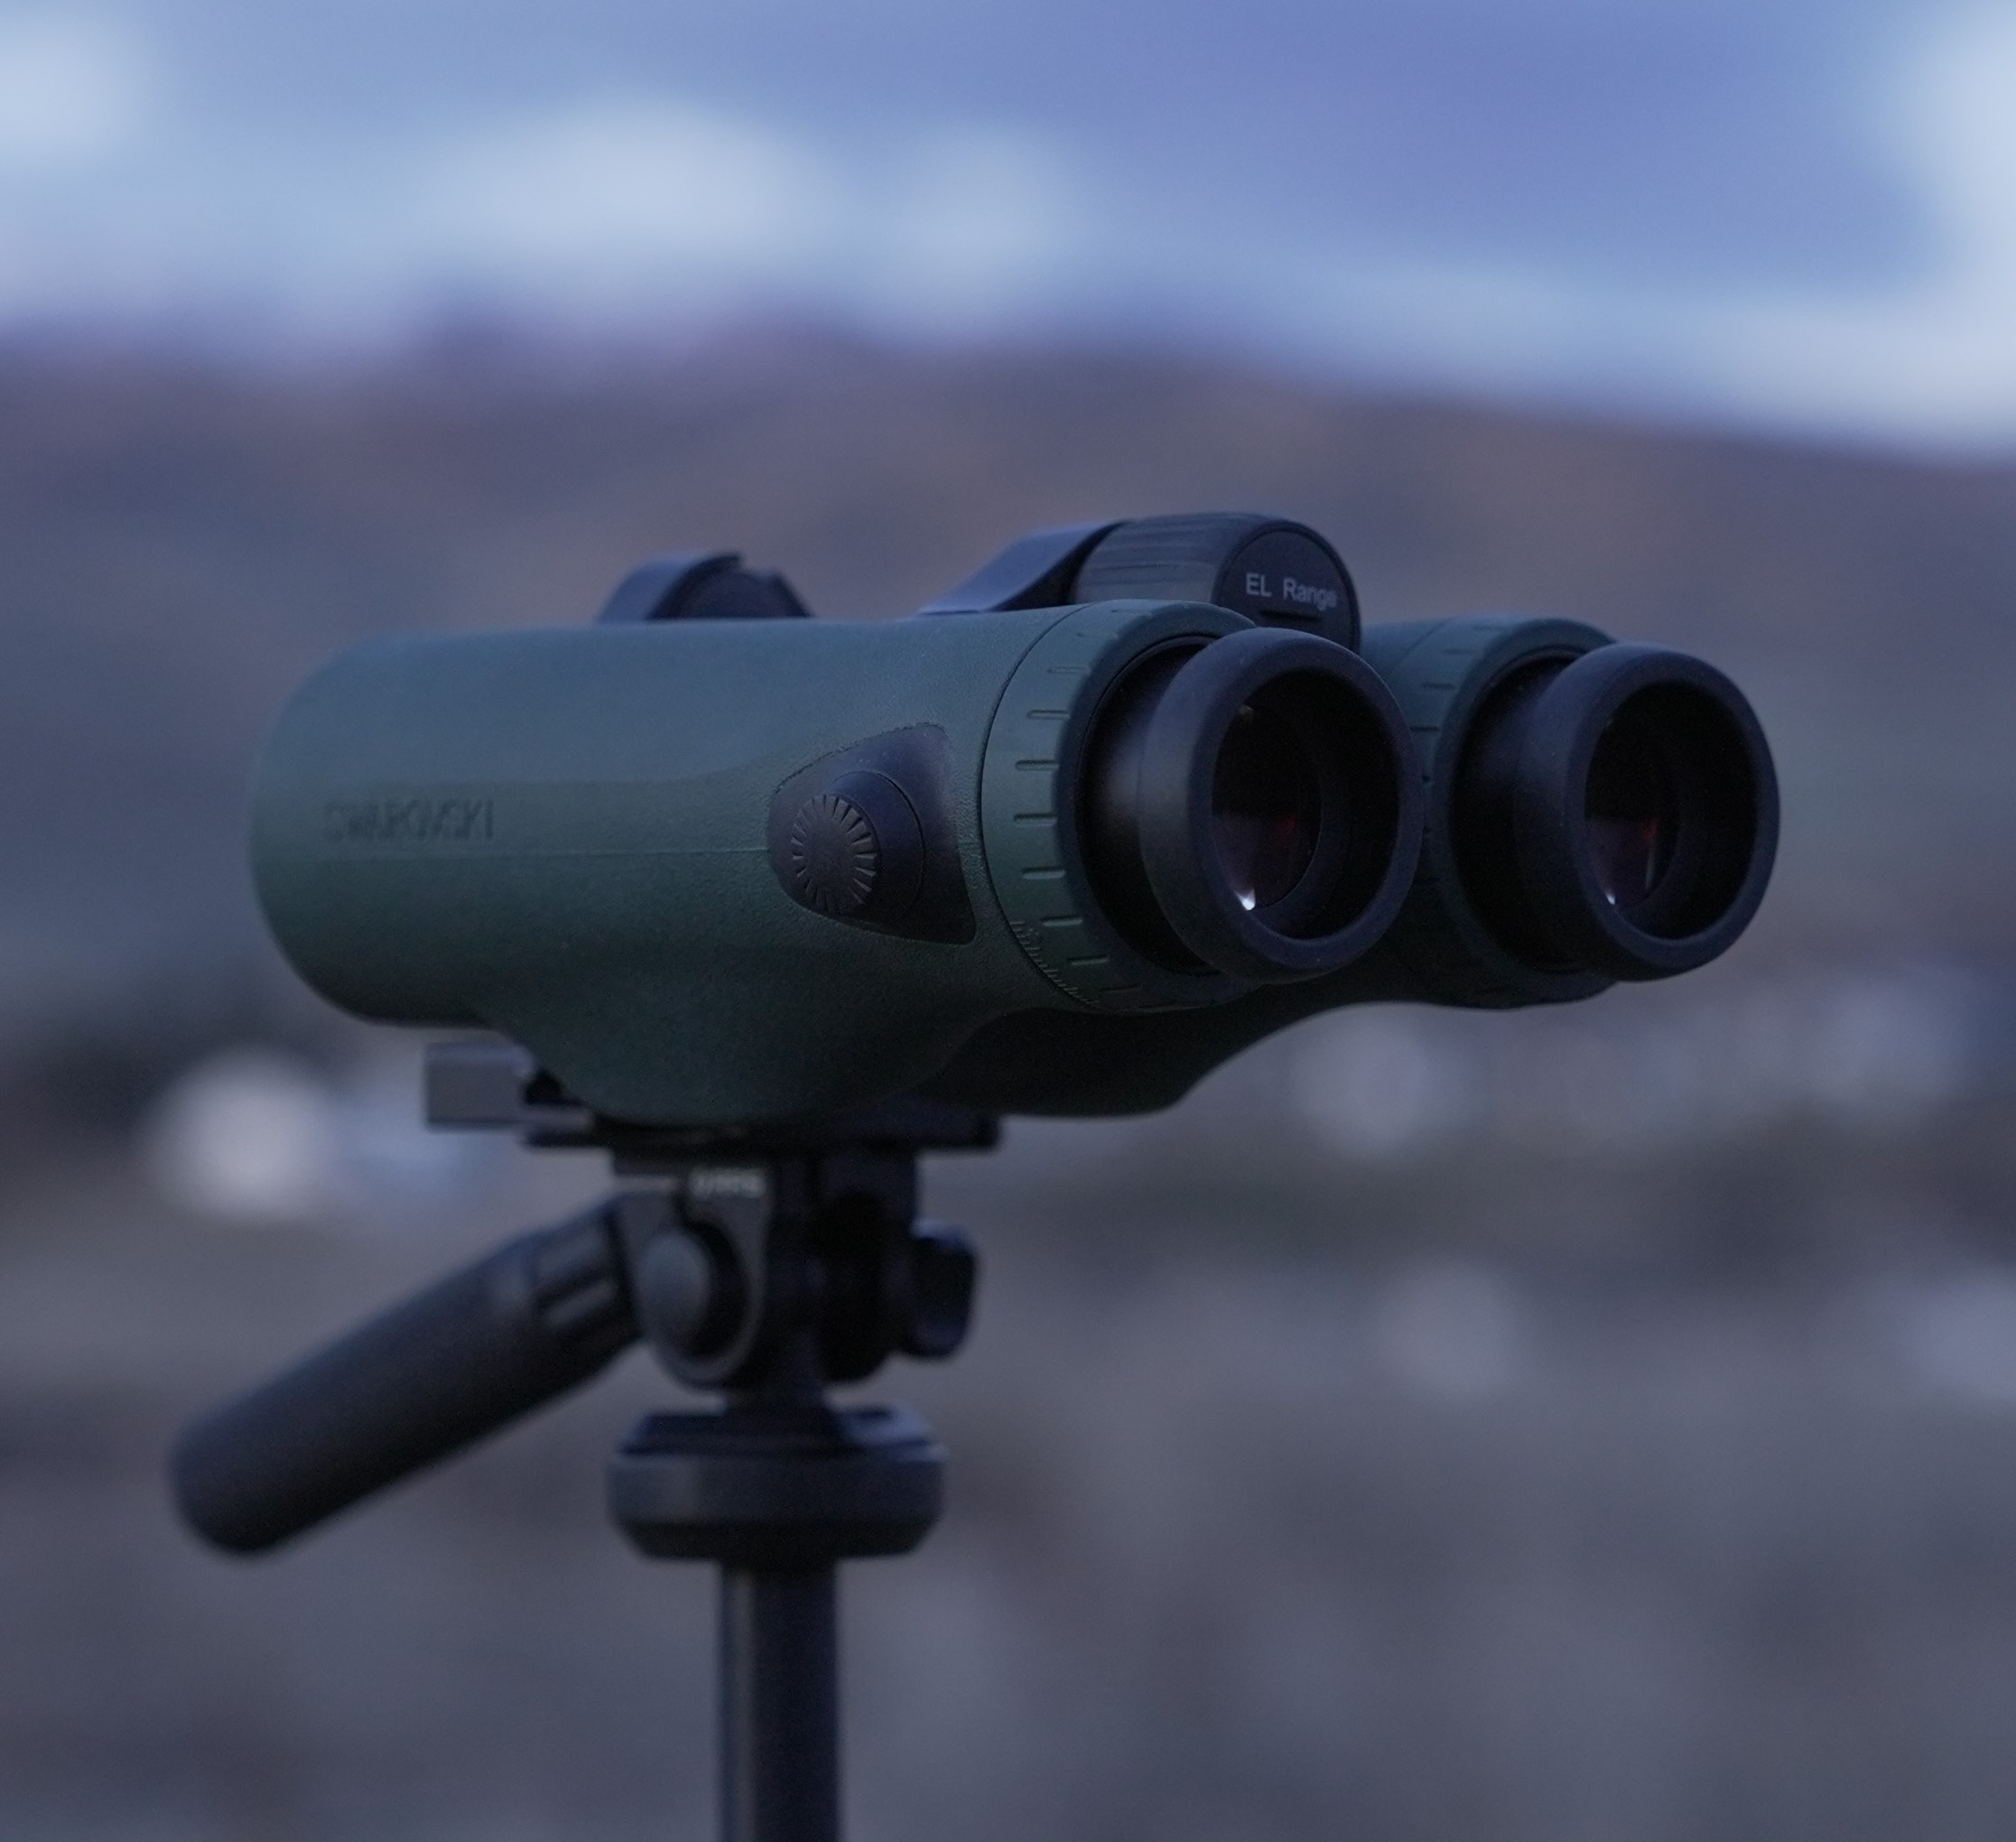 Best rangefinder binoculars -Swarovski EL Range TA 10x42